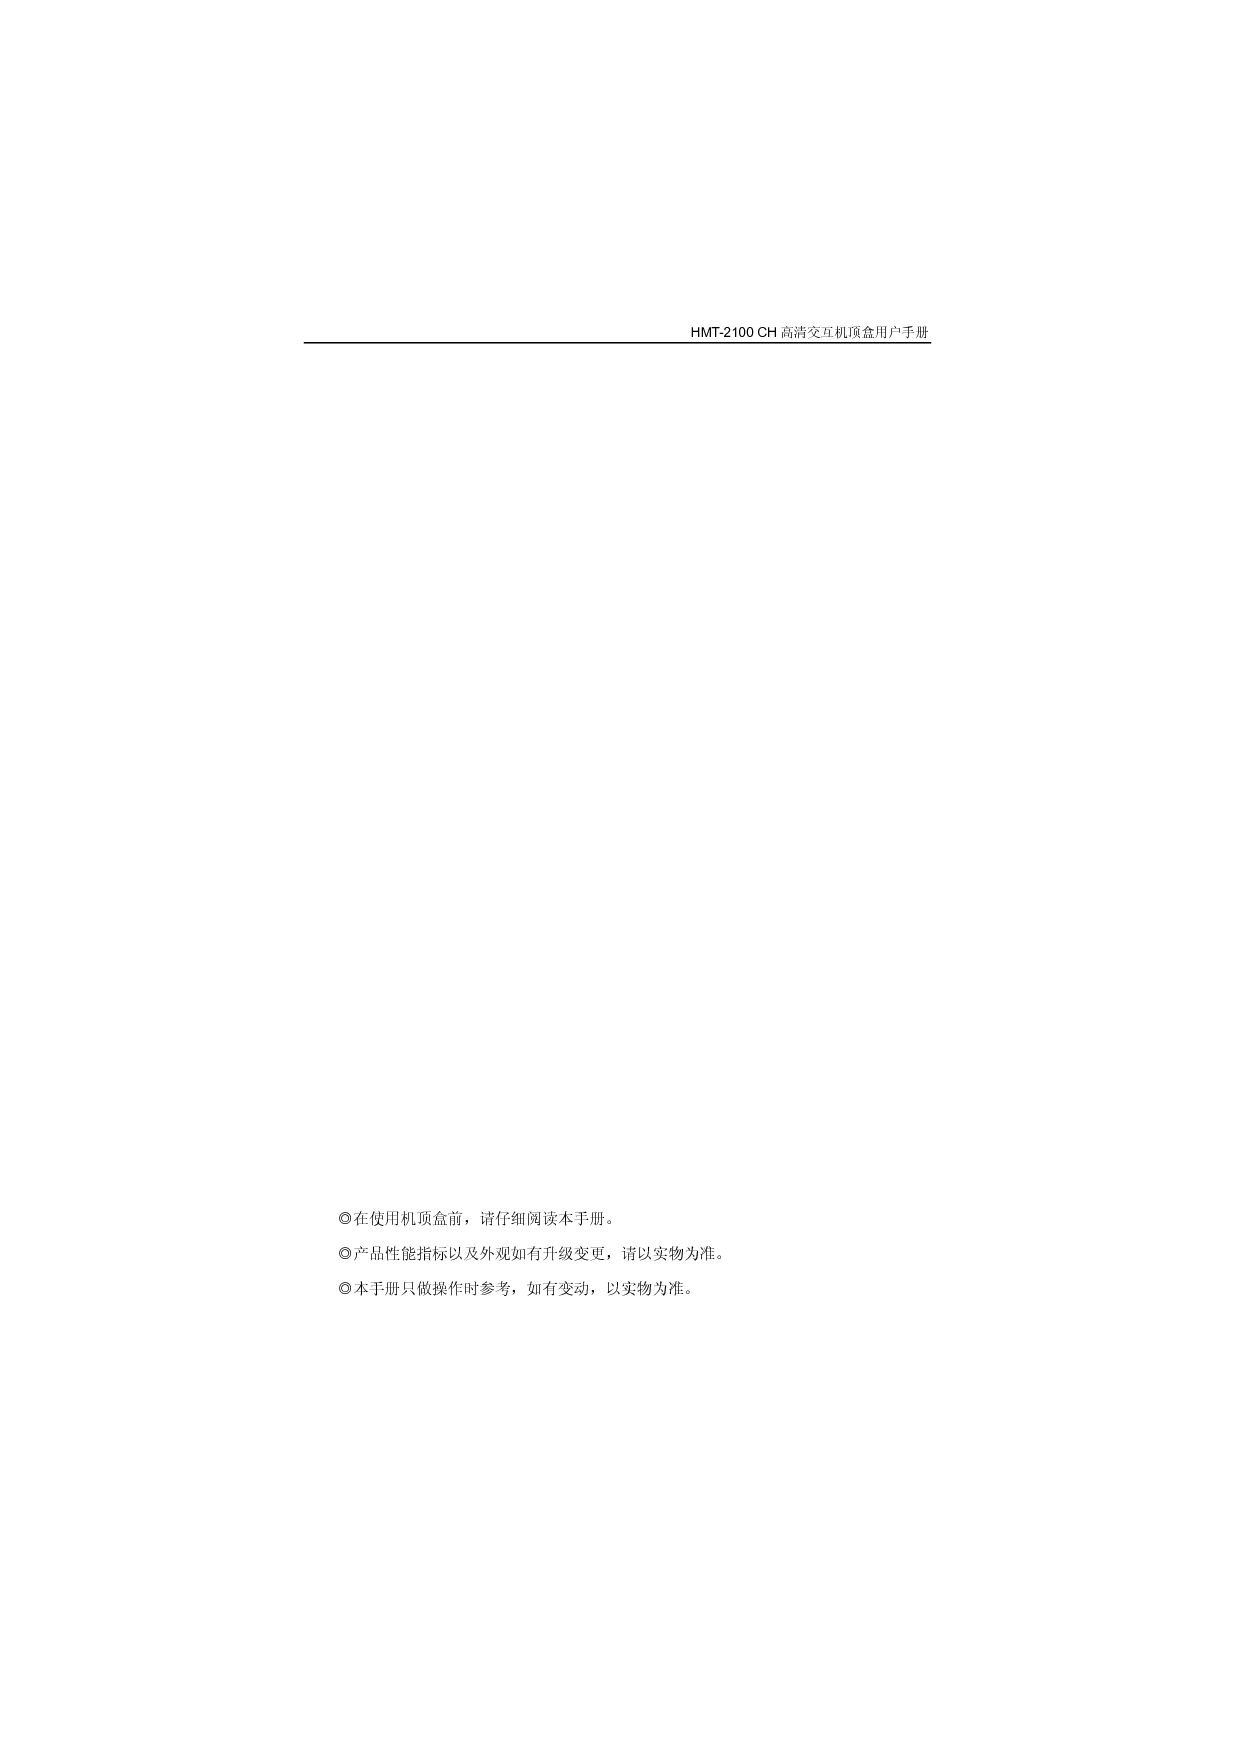 歌华 Gehua HMT-2100CH 第二版 用户手册 第2页